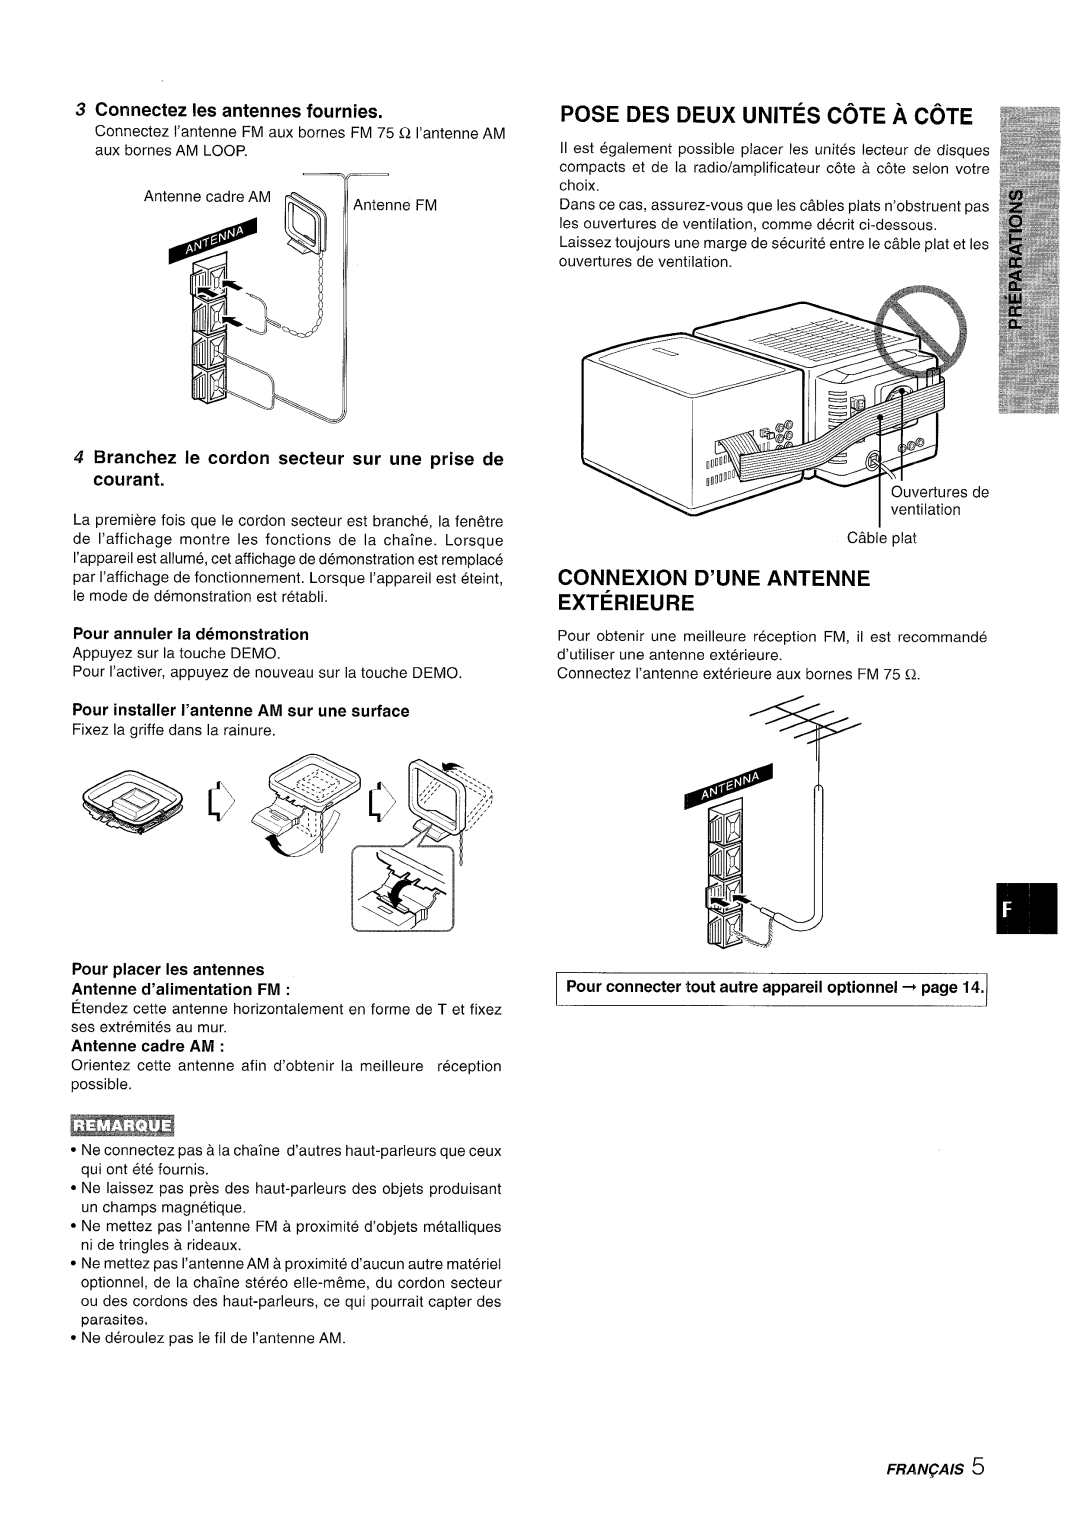 Aiwa XR-M70 manual Pose Des Deux Unites Cote A Cote, Connexion D’Une Antenne Exterieure, Cormectez Ies antennes fournies 